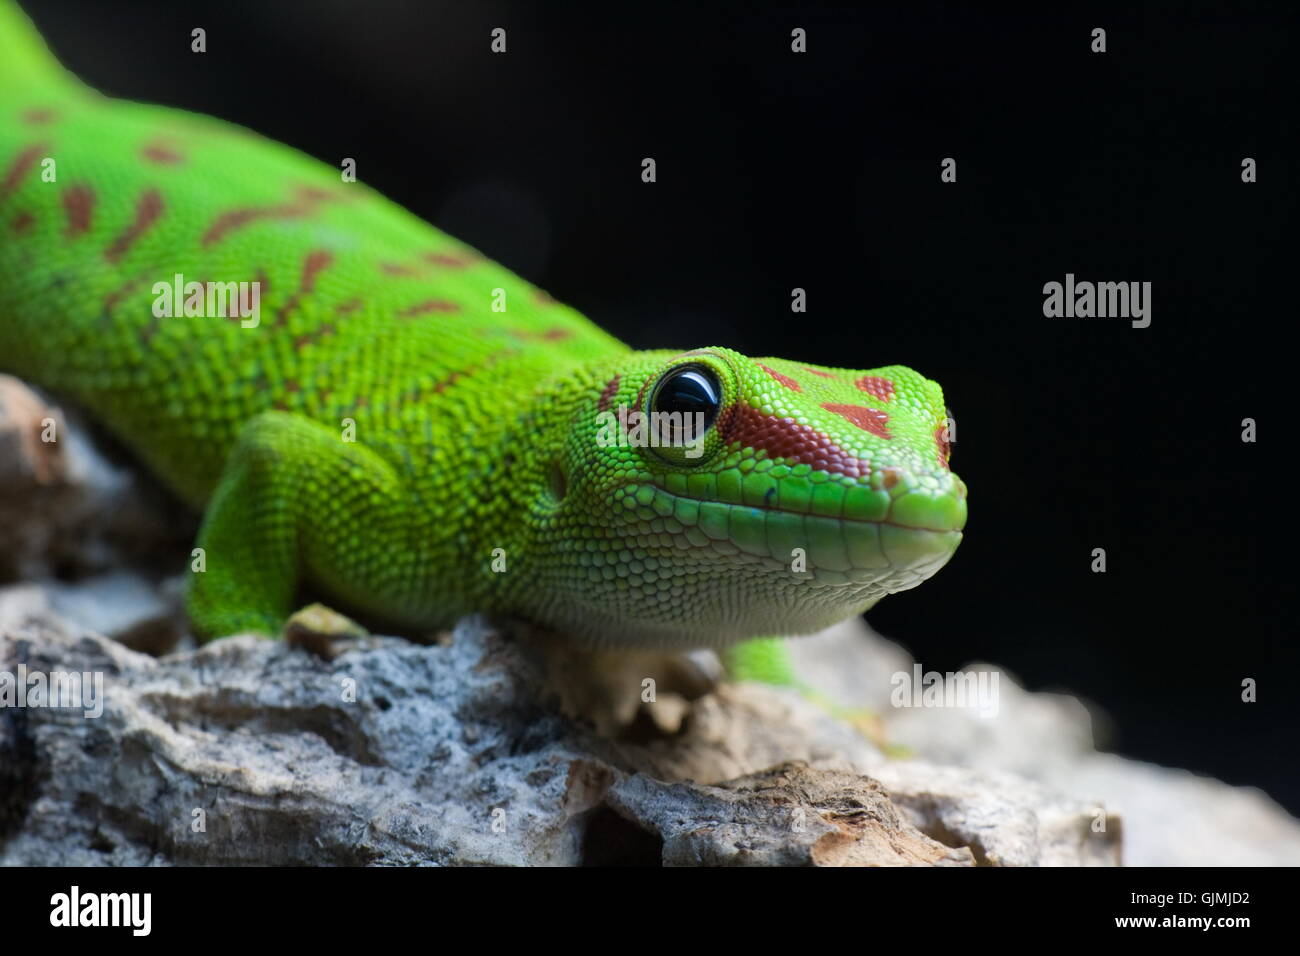 reptile green gecko Stock Photo